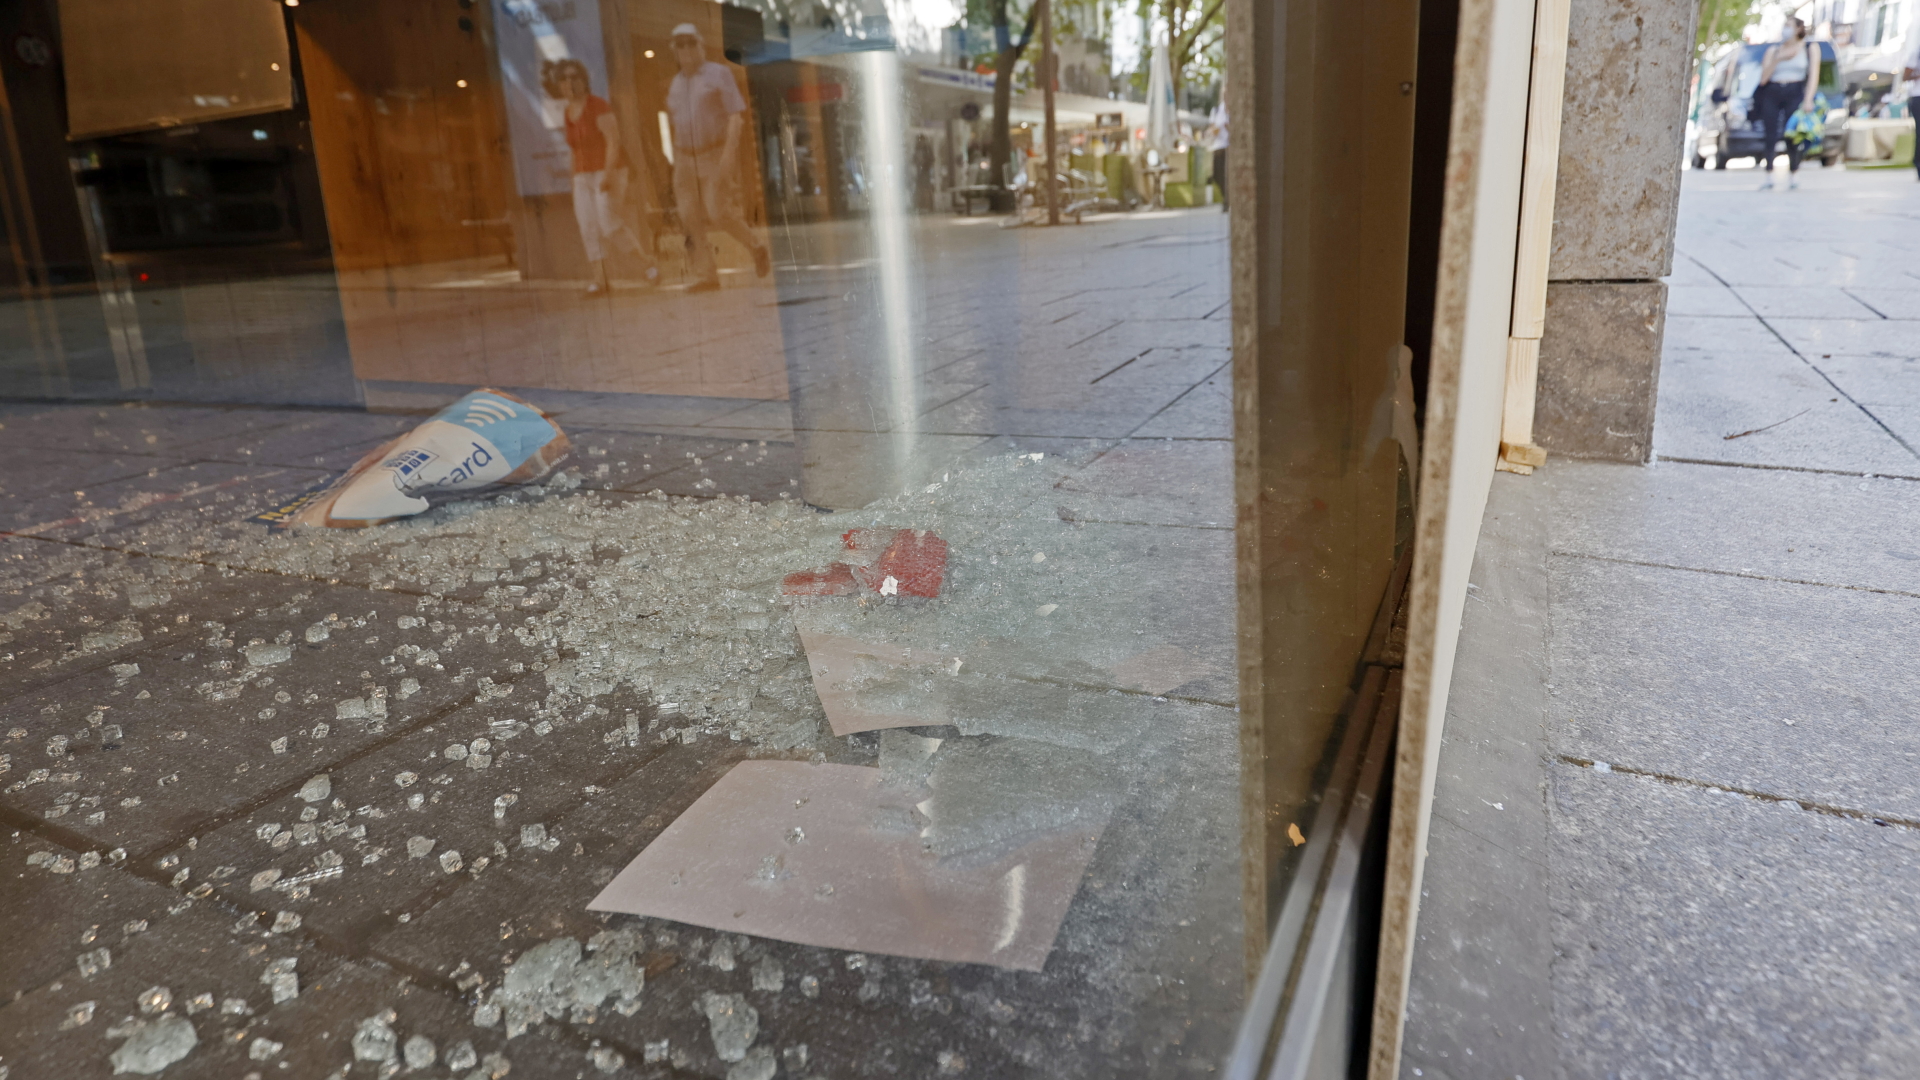 Zerstörte Fensterscheiben in Stuttgart | Bildquelle: RONALD WITTEK/EPA-EFE/Shuttersto